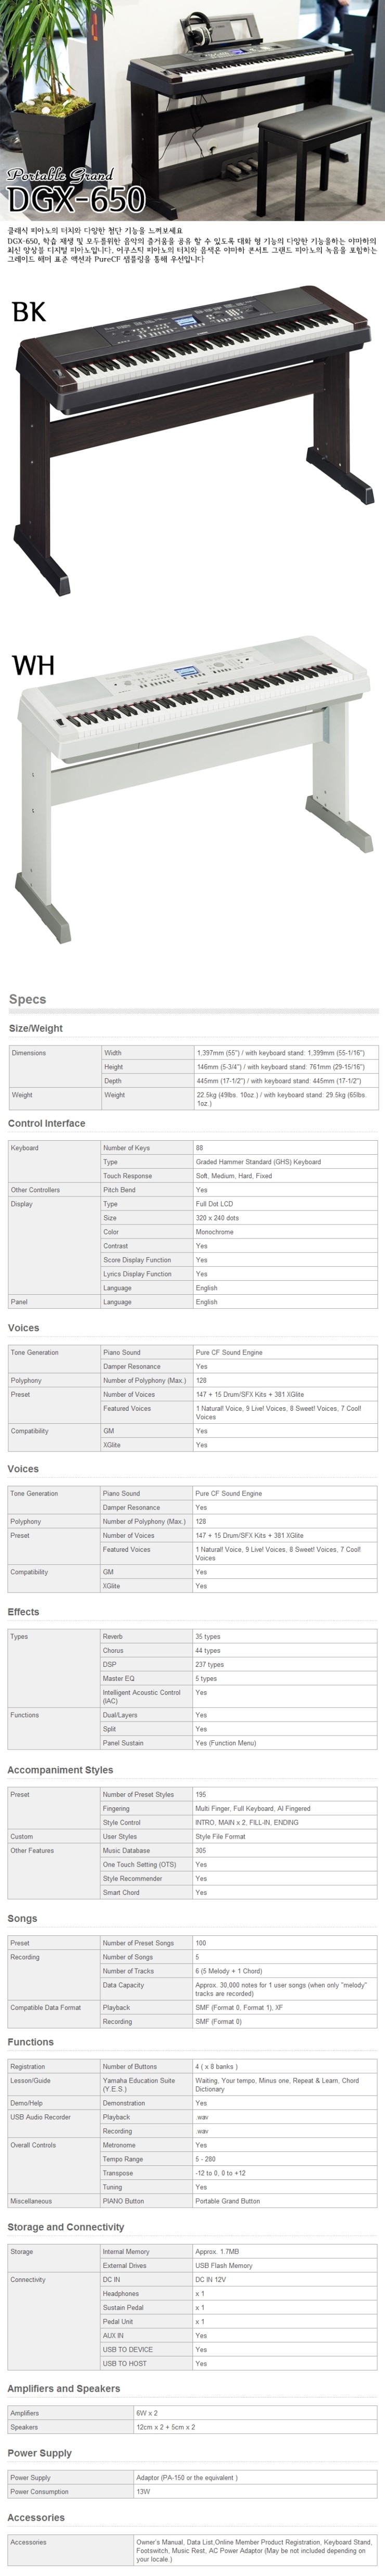 디지털피아노 야마하 DGX-650/ DGX650 신제품 출시 및 파격할인행사 : 네이버 블로그